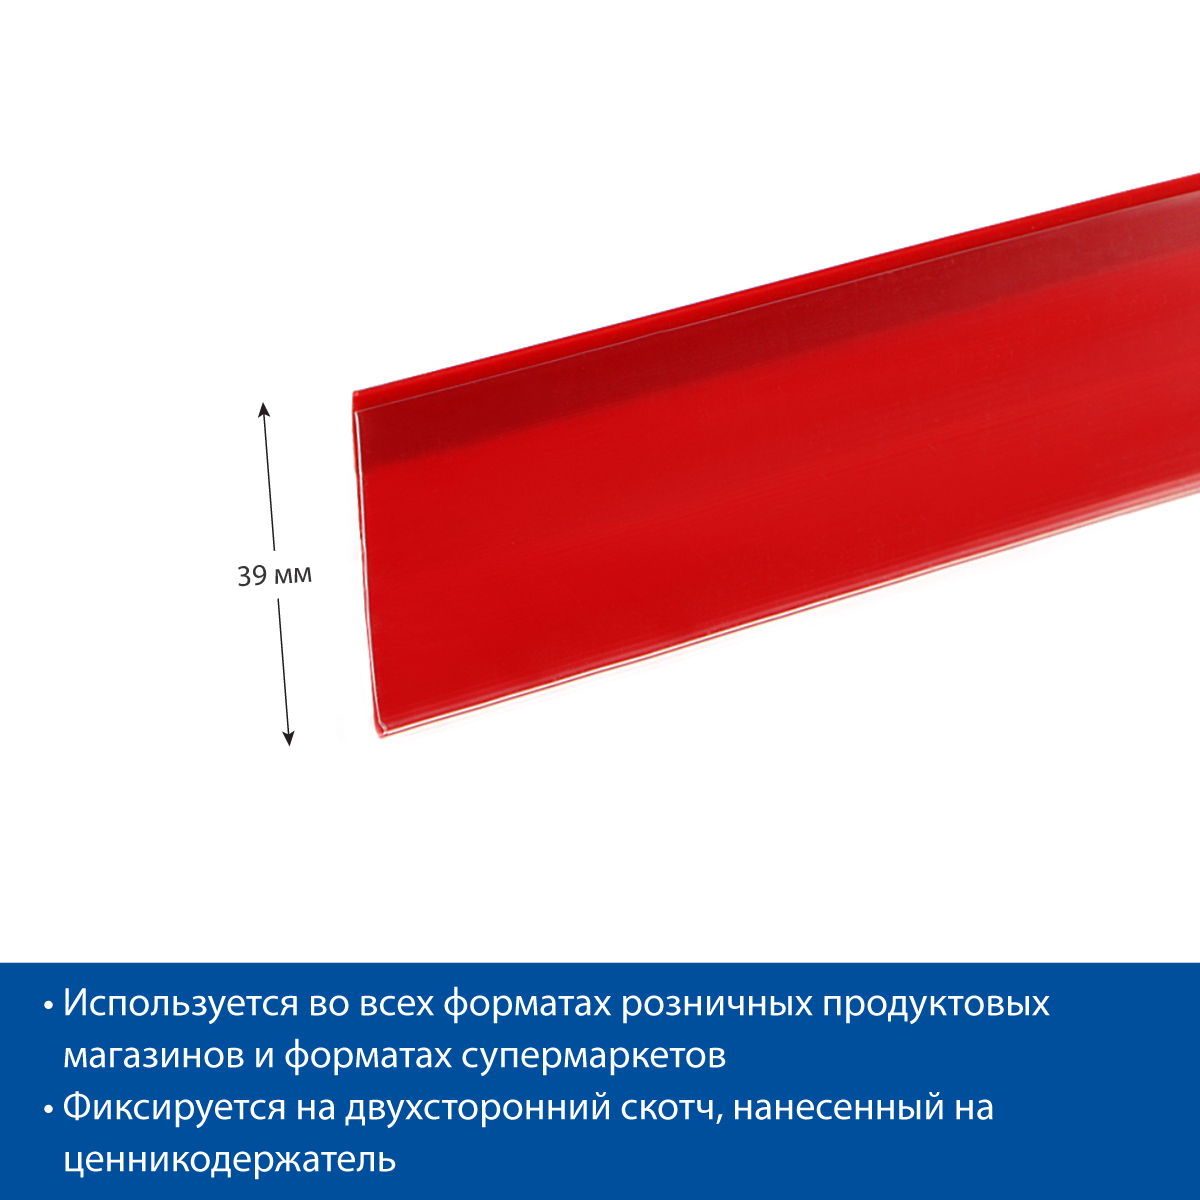 Ценникодержатель DBR39 красный, 1000 мм (10 шт. в упаковке)